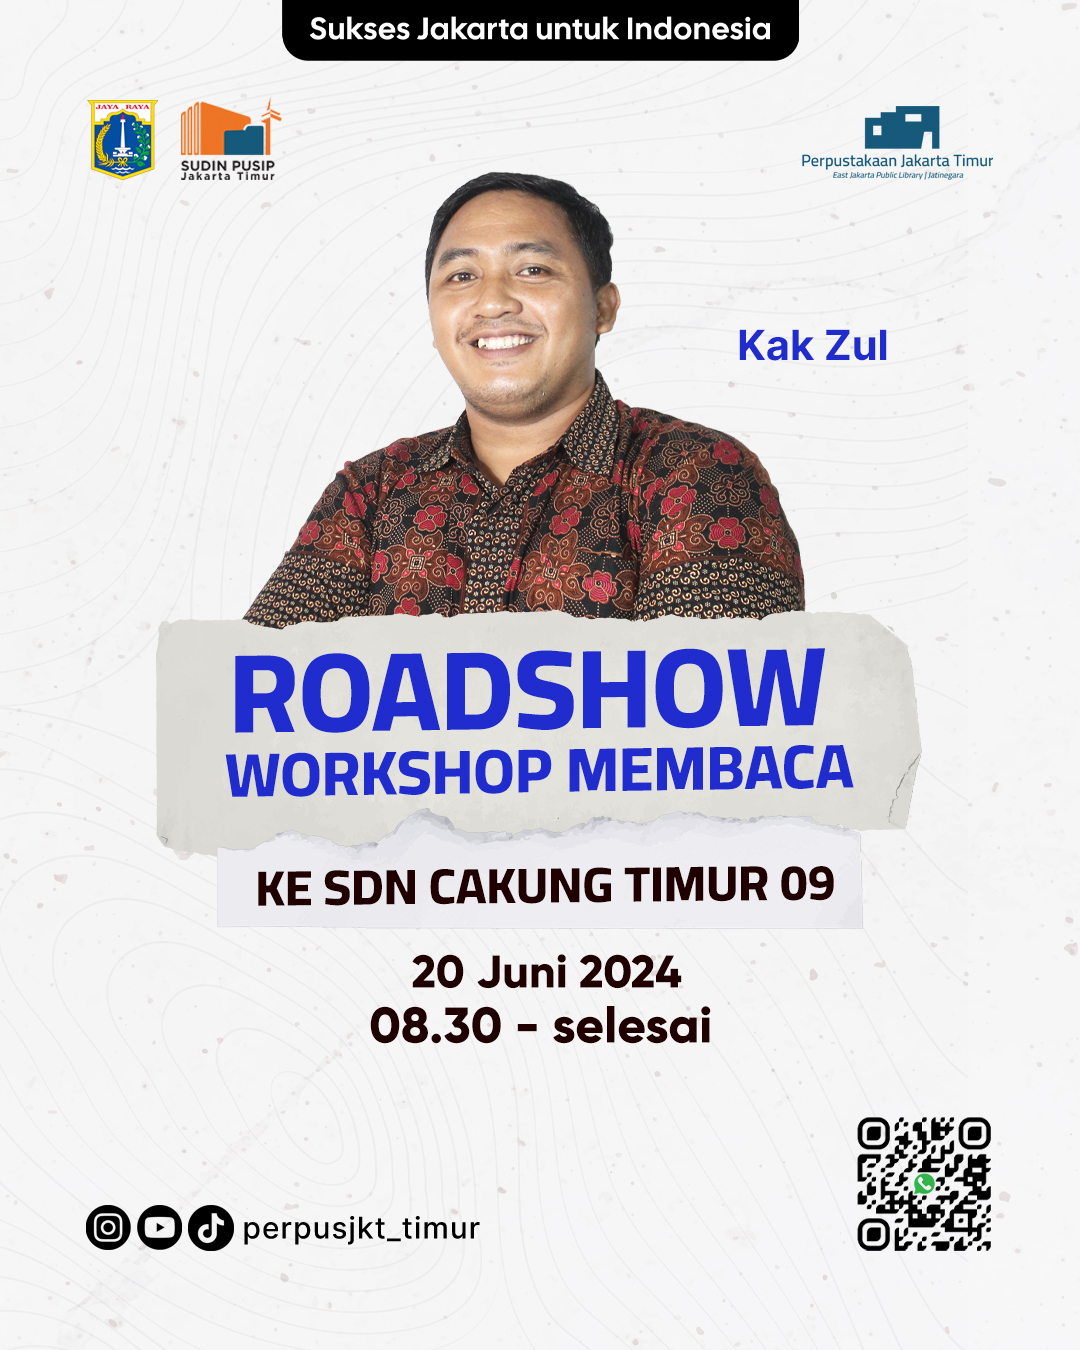 Roadshow Workshop Membaca Di SDN Cakung Timur 09